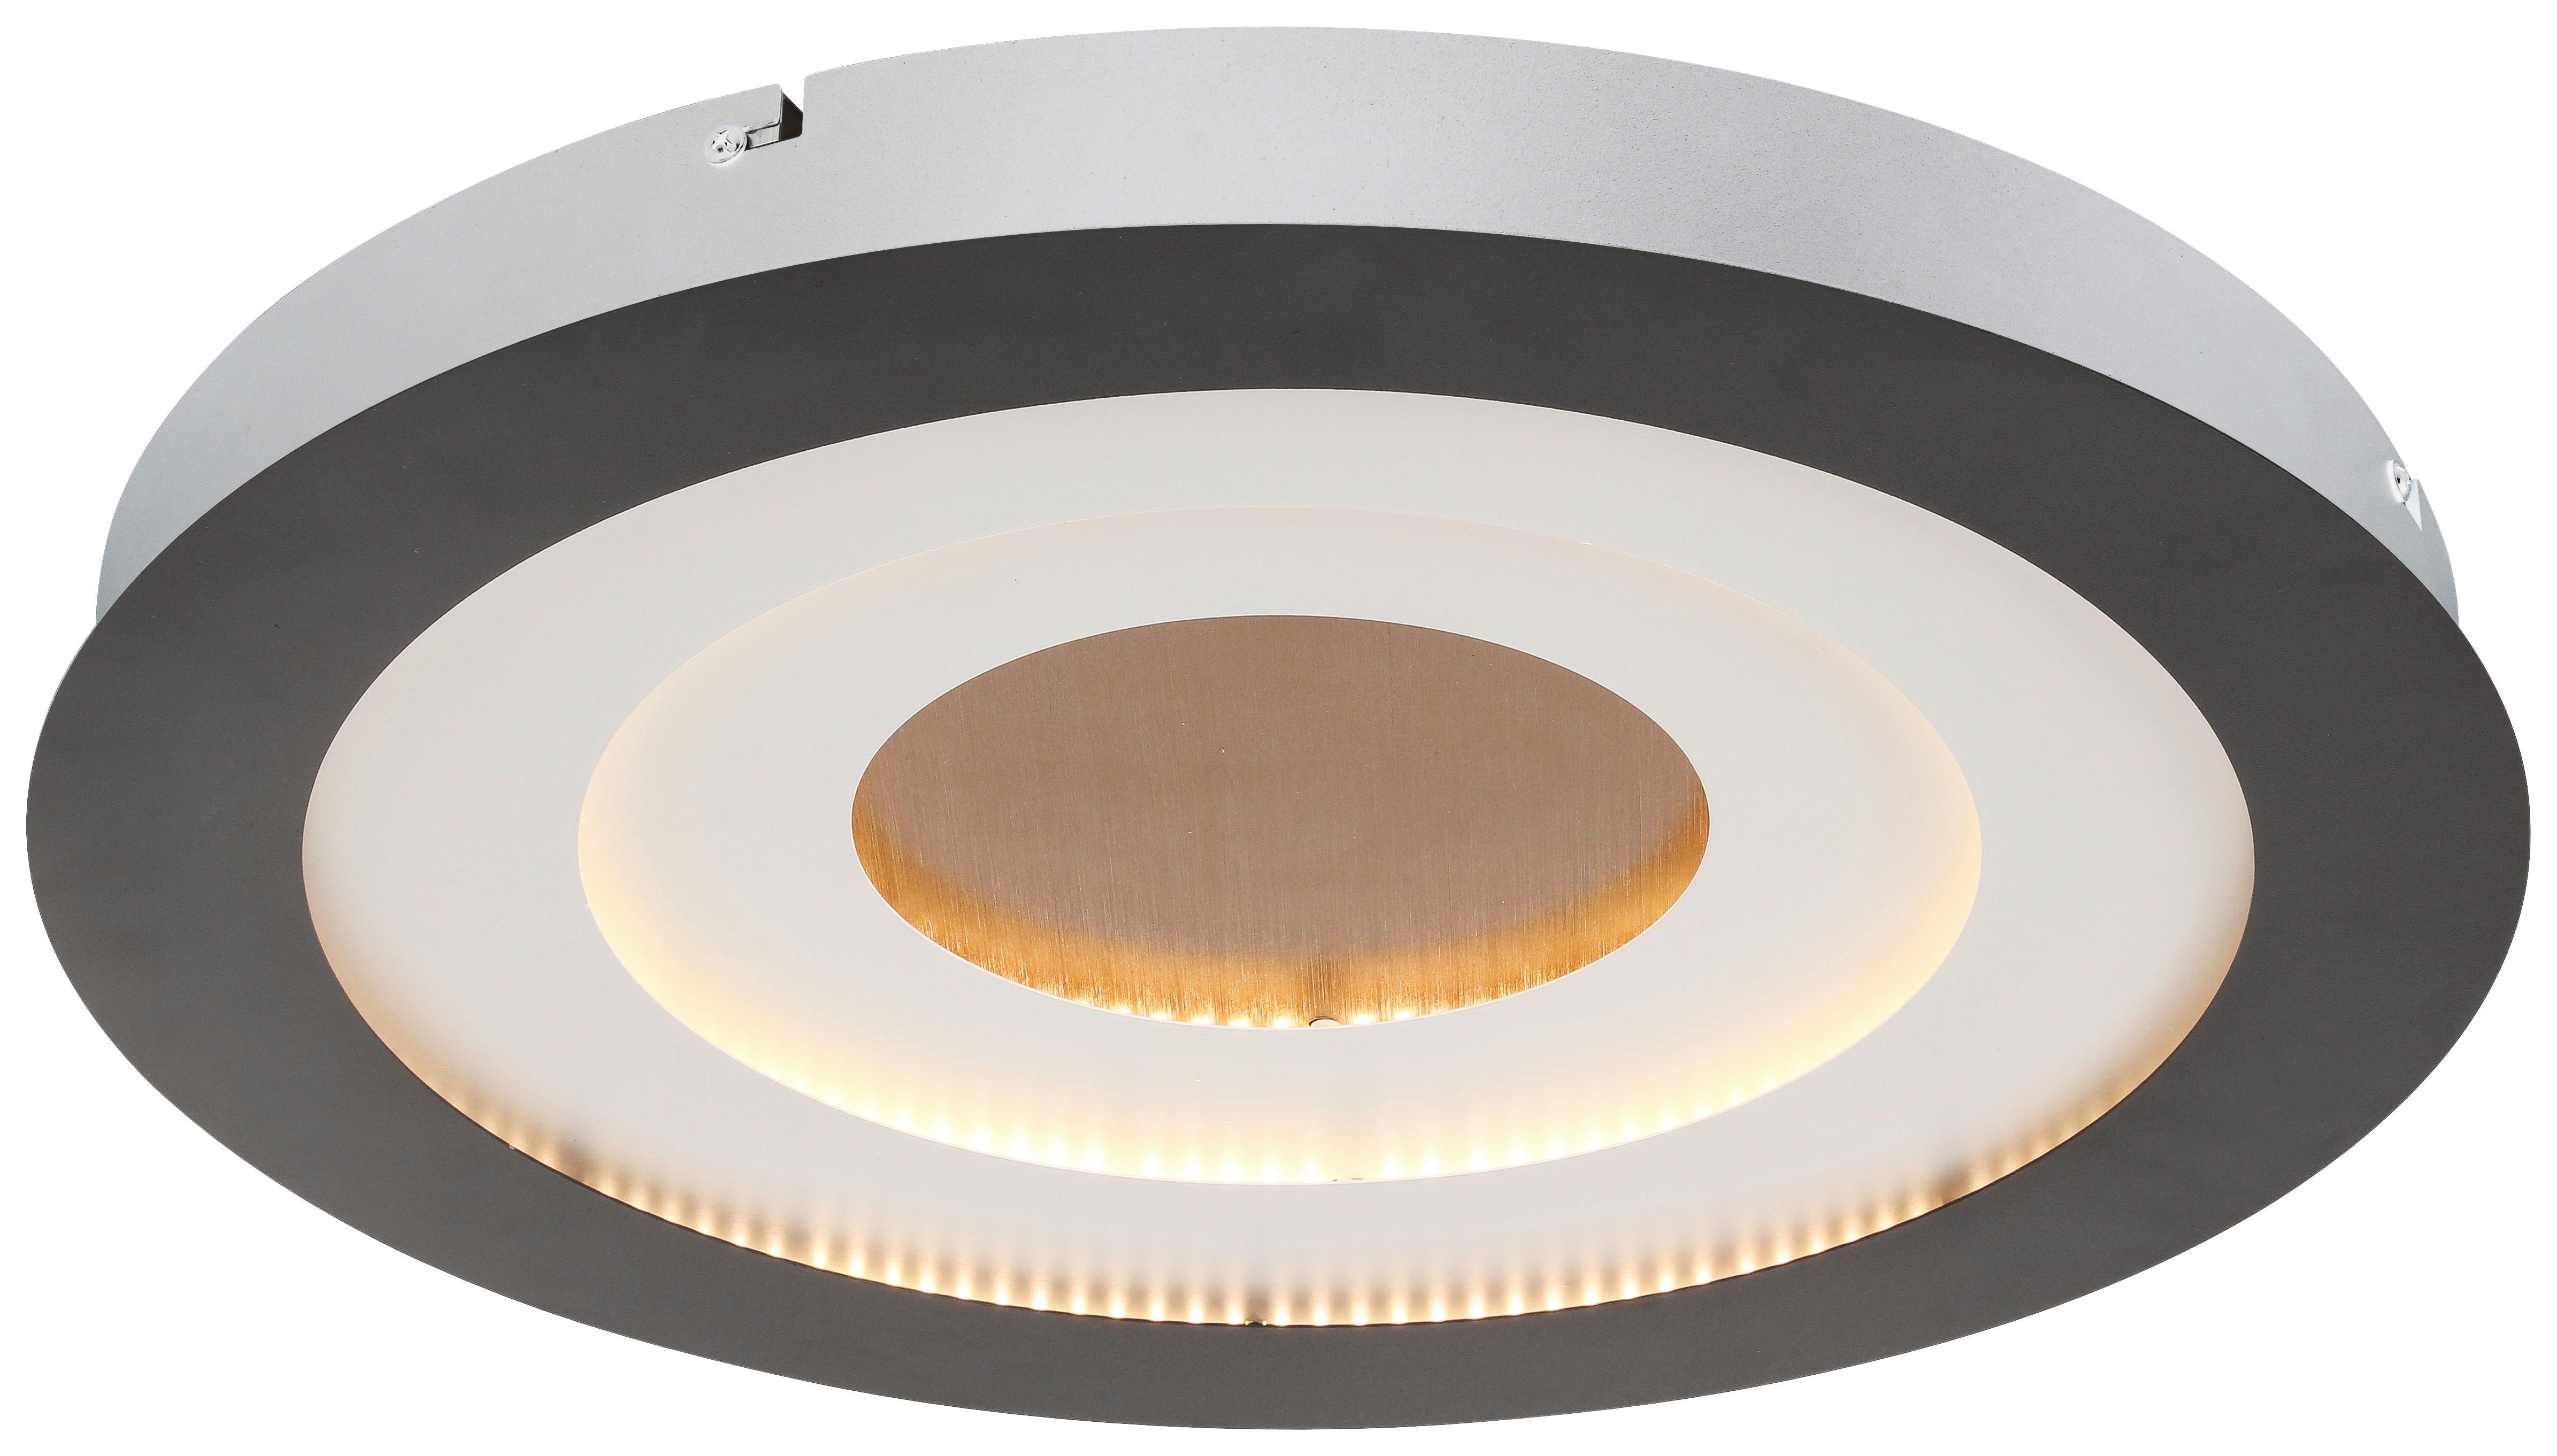 LED-Deckenleuchte Sprimo max. 36 Watt - Weiss/Goldfarben, Modern, Kunststoff/Metall (46/4,5cm) - Modern Living